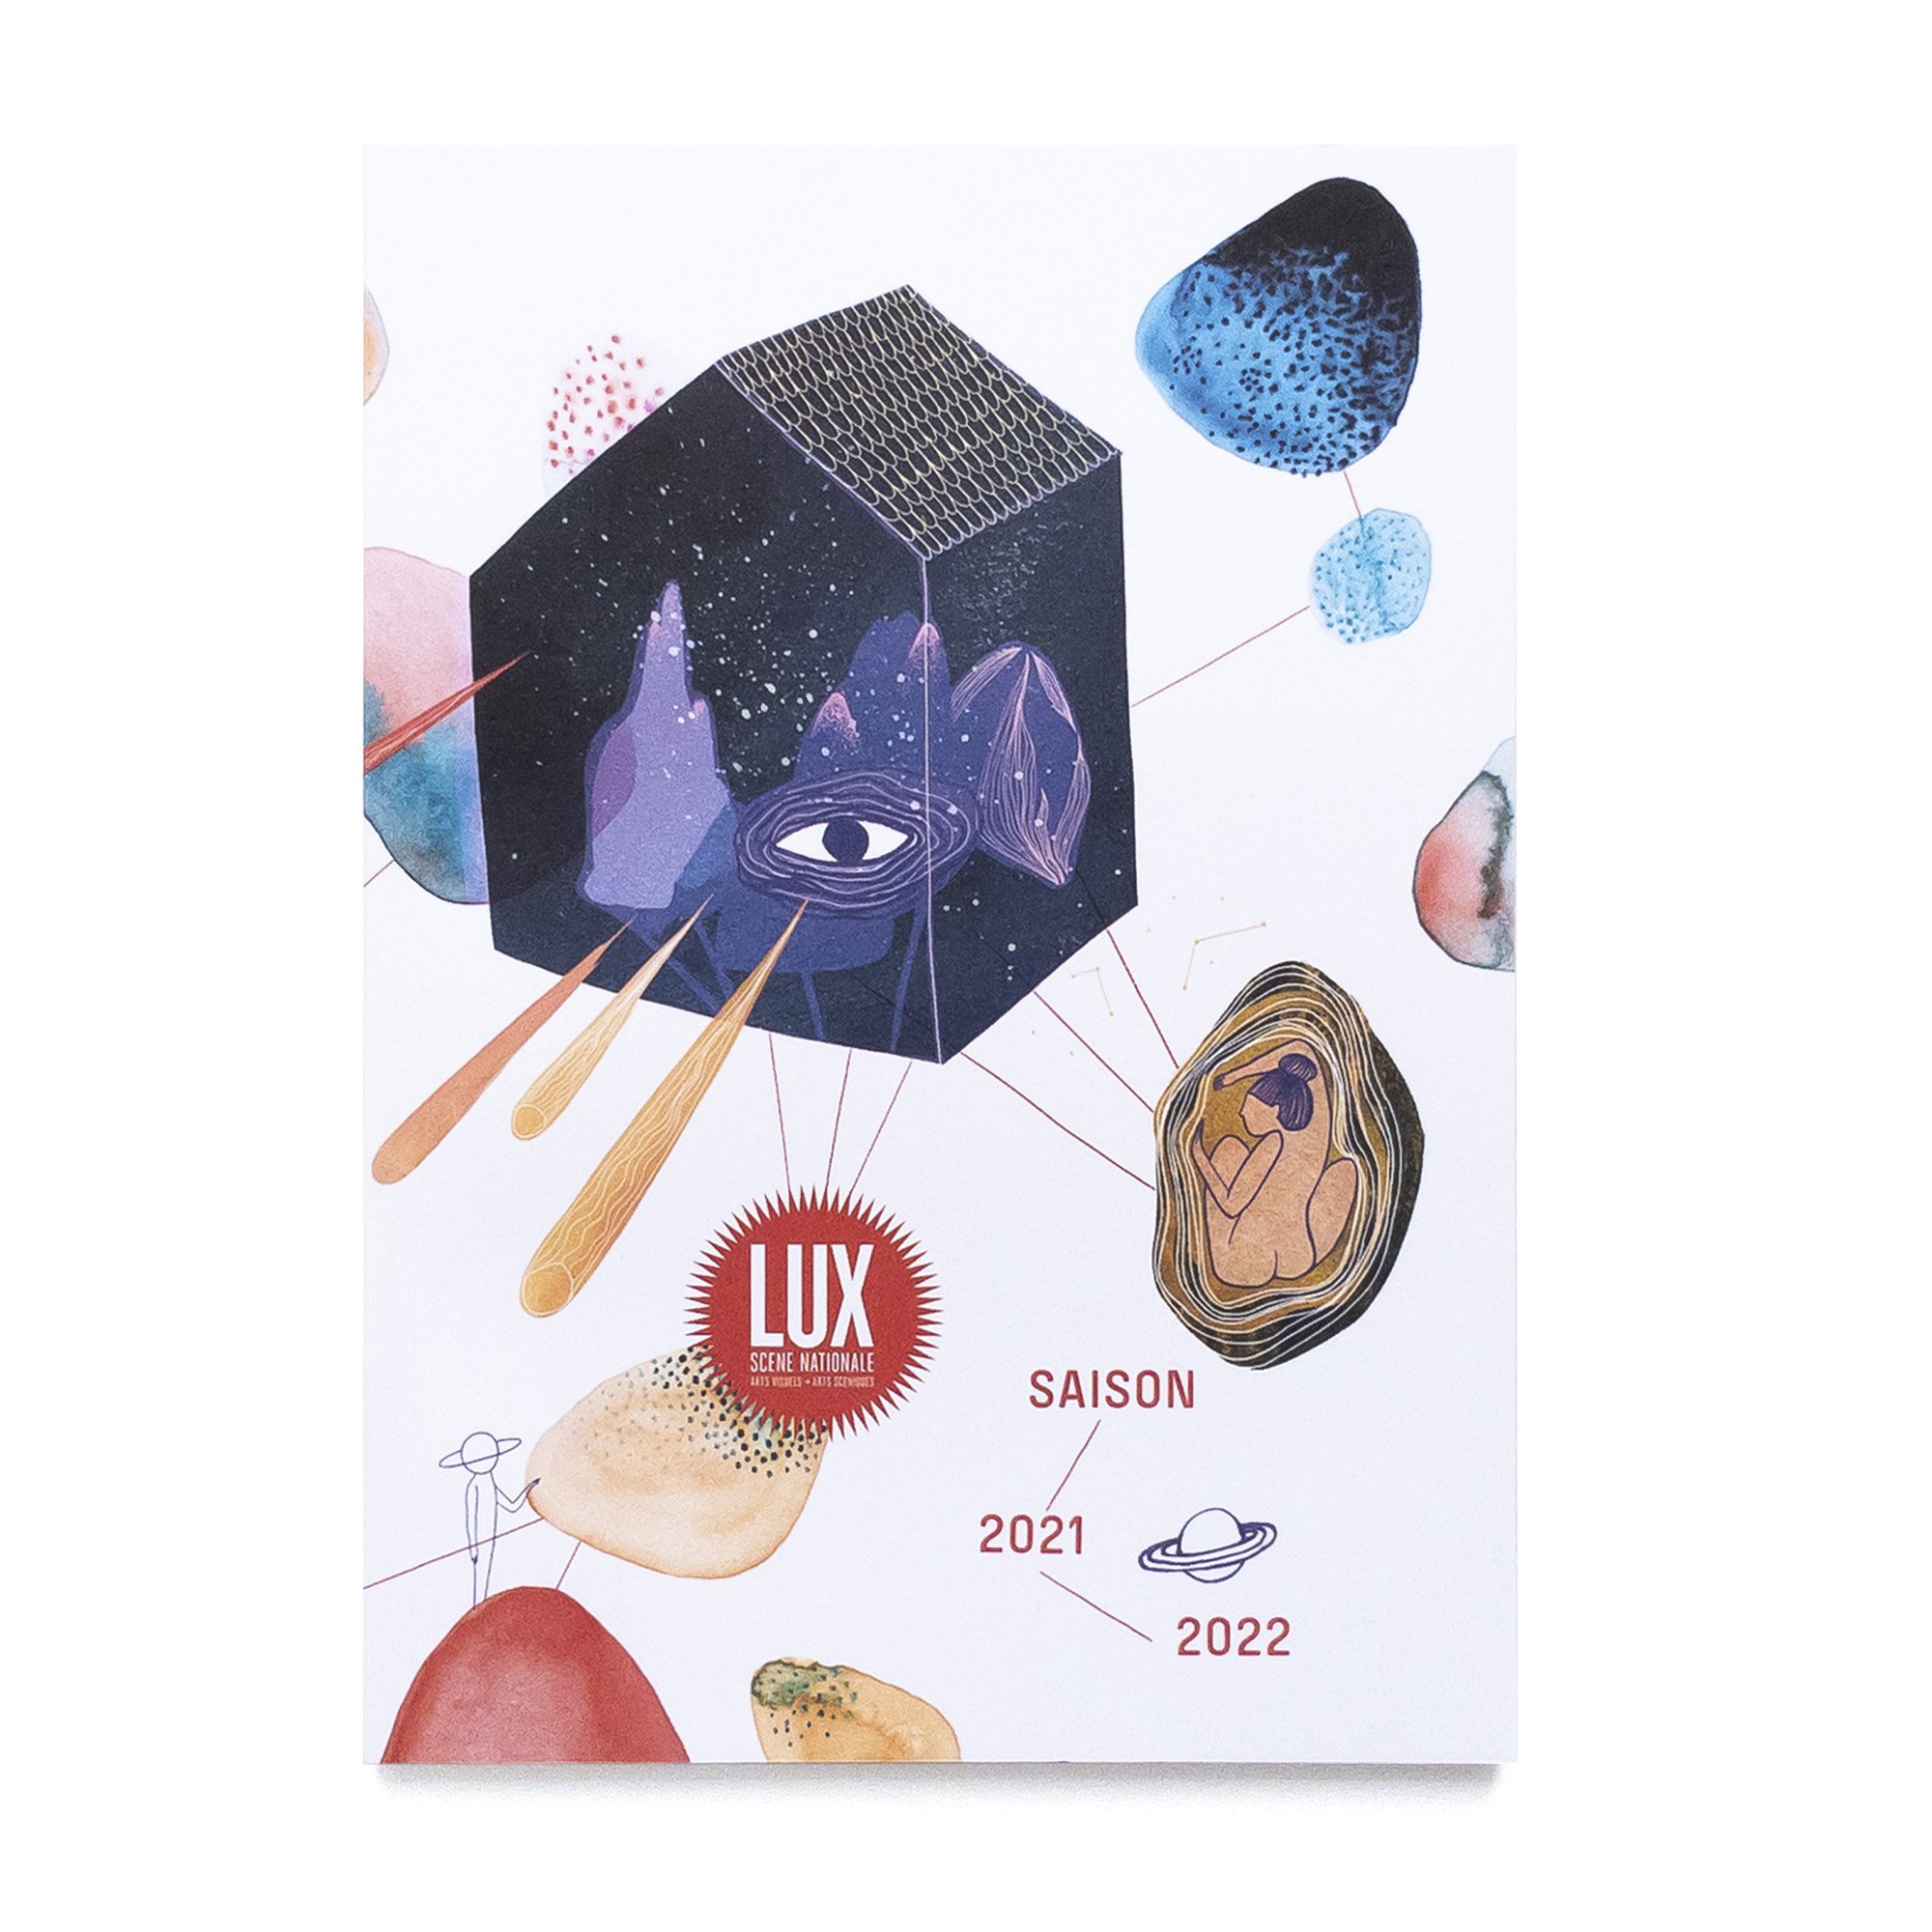   Lux saison 2021 / 2022   En collaboration avec Marion Lacourt (réalisatrice / illustratrice)  Lux scène nationale de Valence 